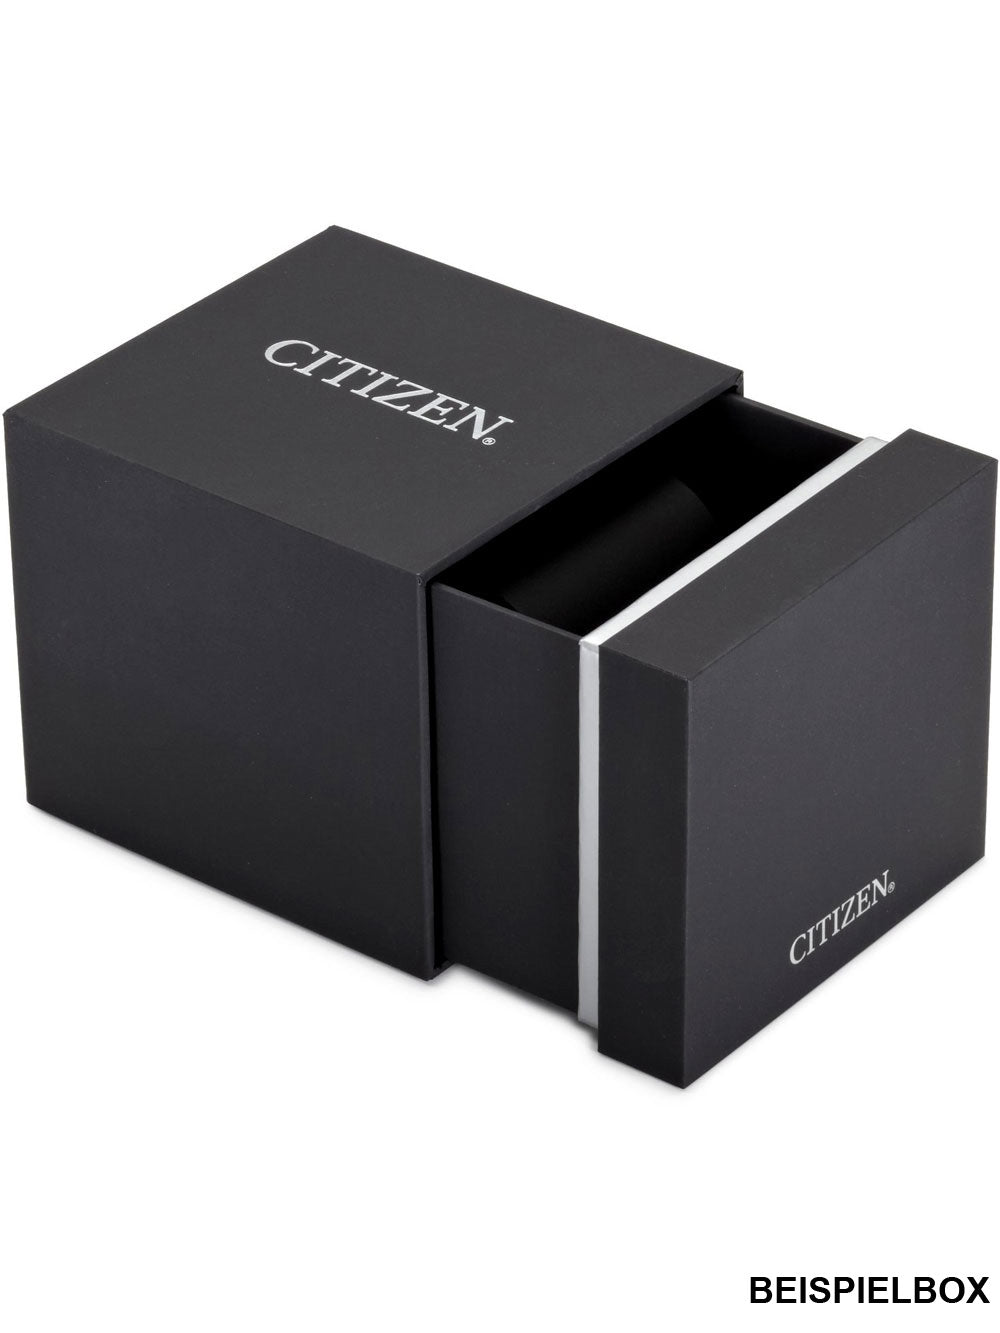 Citizen CA0718-13E Promaster chronograph 44mm 20ATM